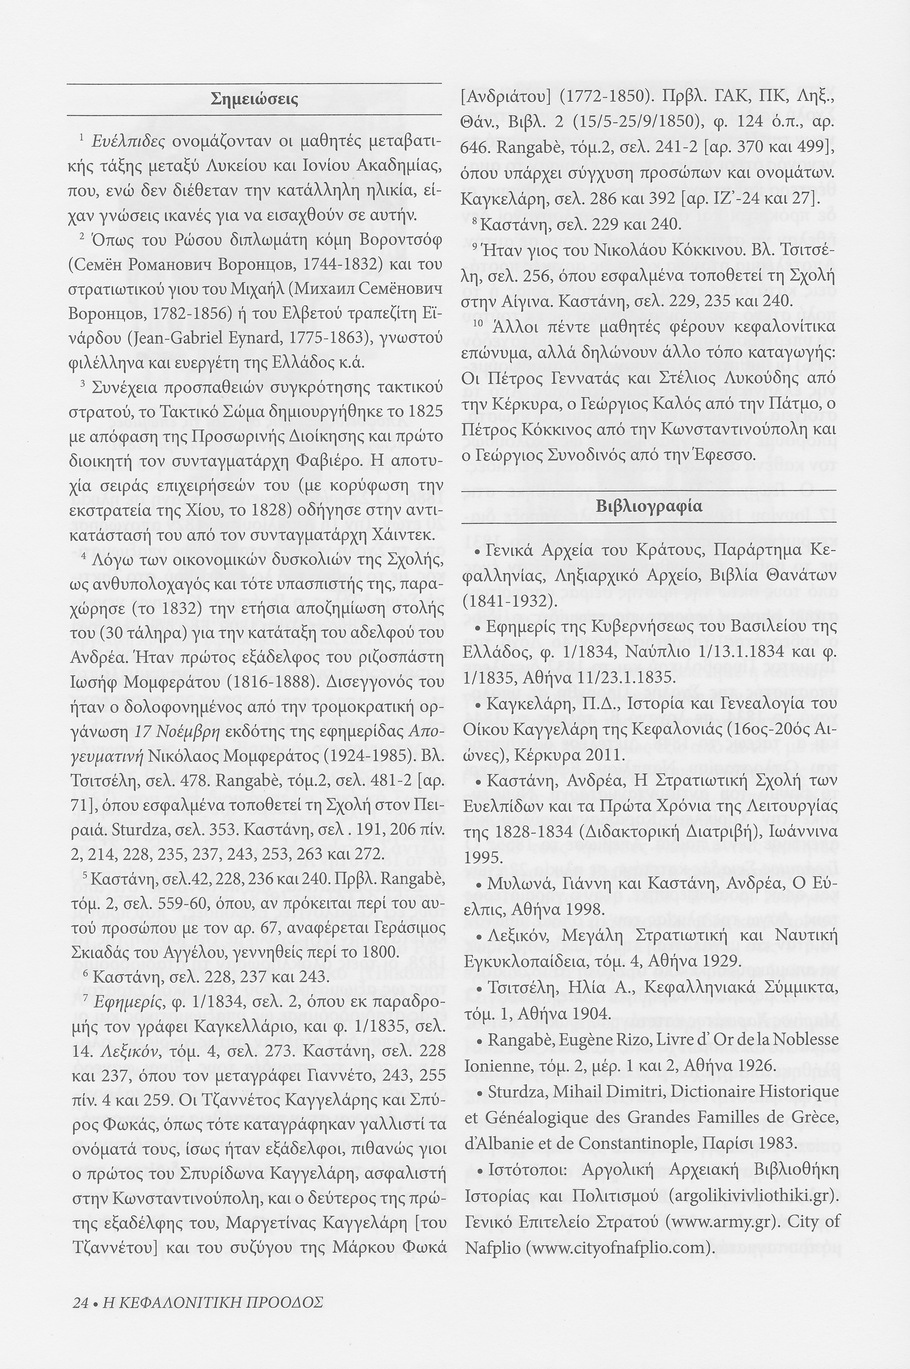 Κεφαλονίτες Ευέλπιδες , Κεφαλονίτικη Πρόοδος, Β-13, σελ. 24